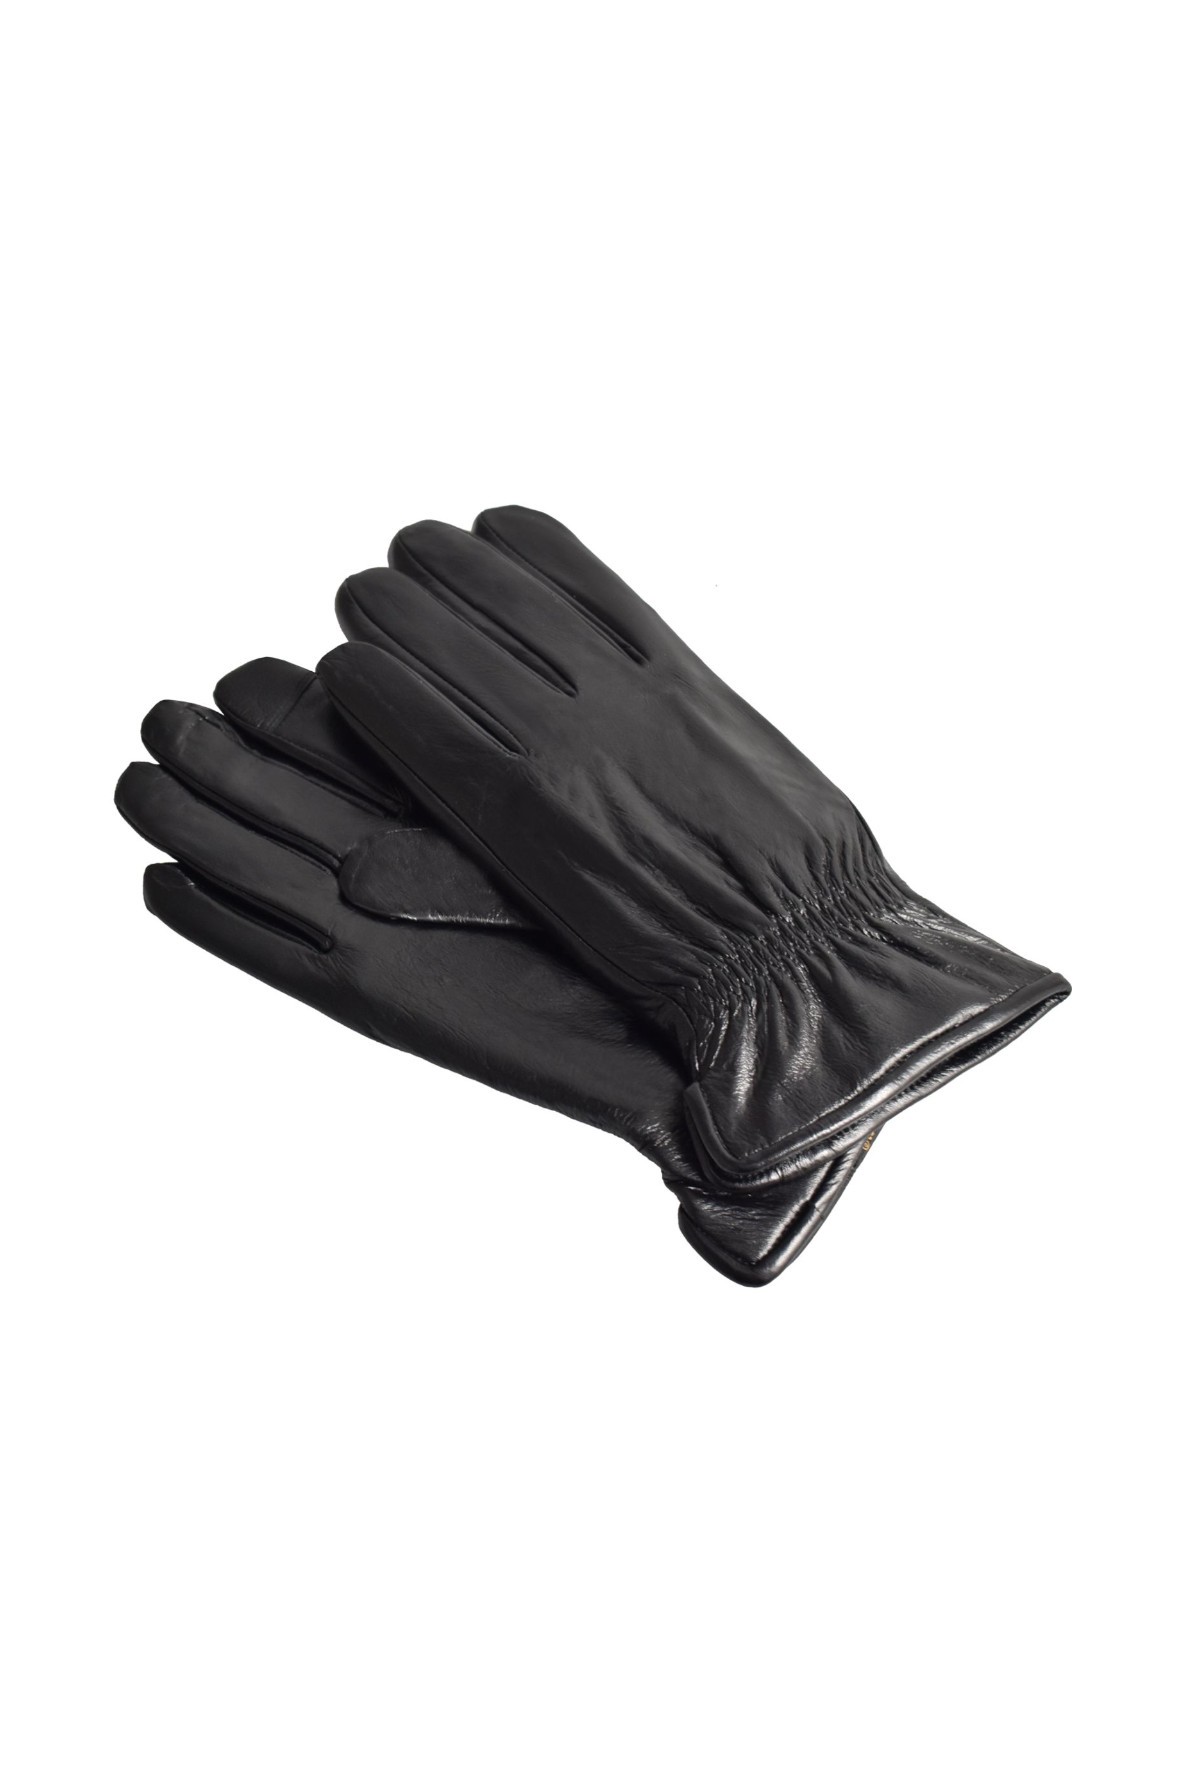 Rękawiczki męskie skórzane antybakteryjne - czarne